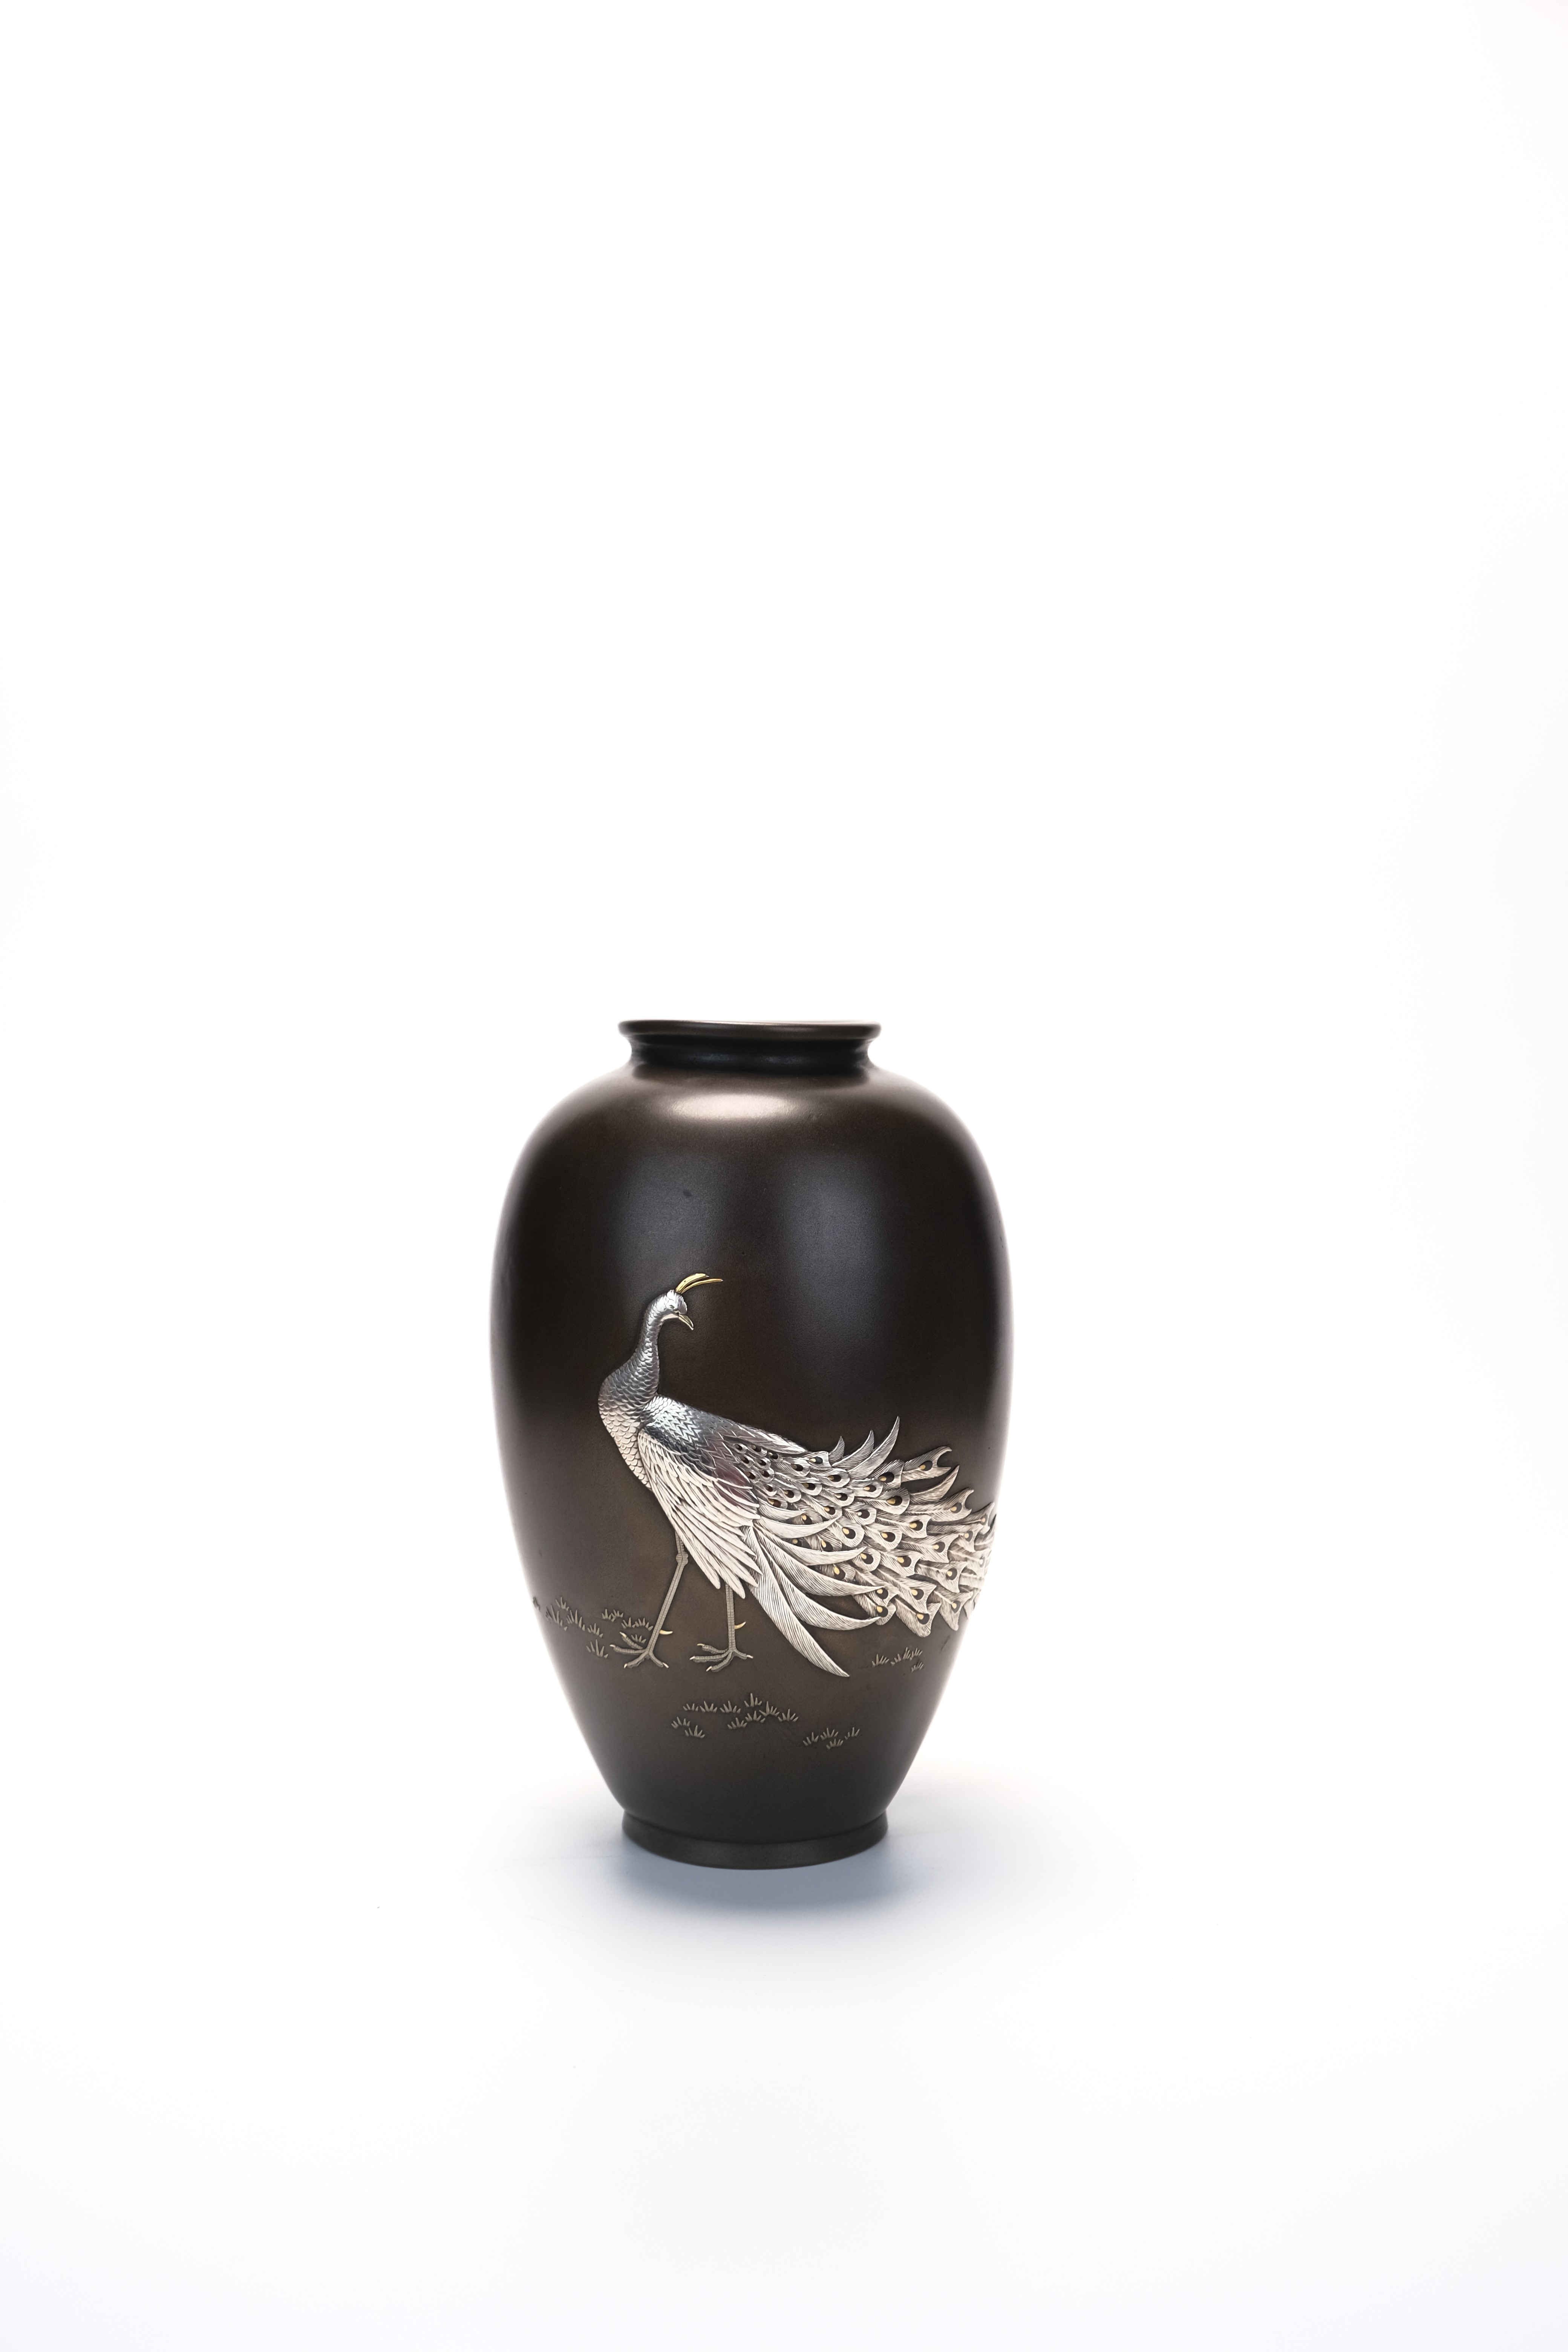 限时竞拍, 京都黑田造金銀象嵌孔雀紋銅花瓶H22.8 直径15 重さ1864g H22 